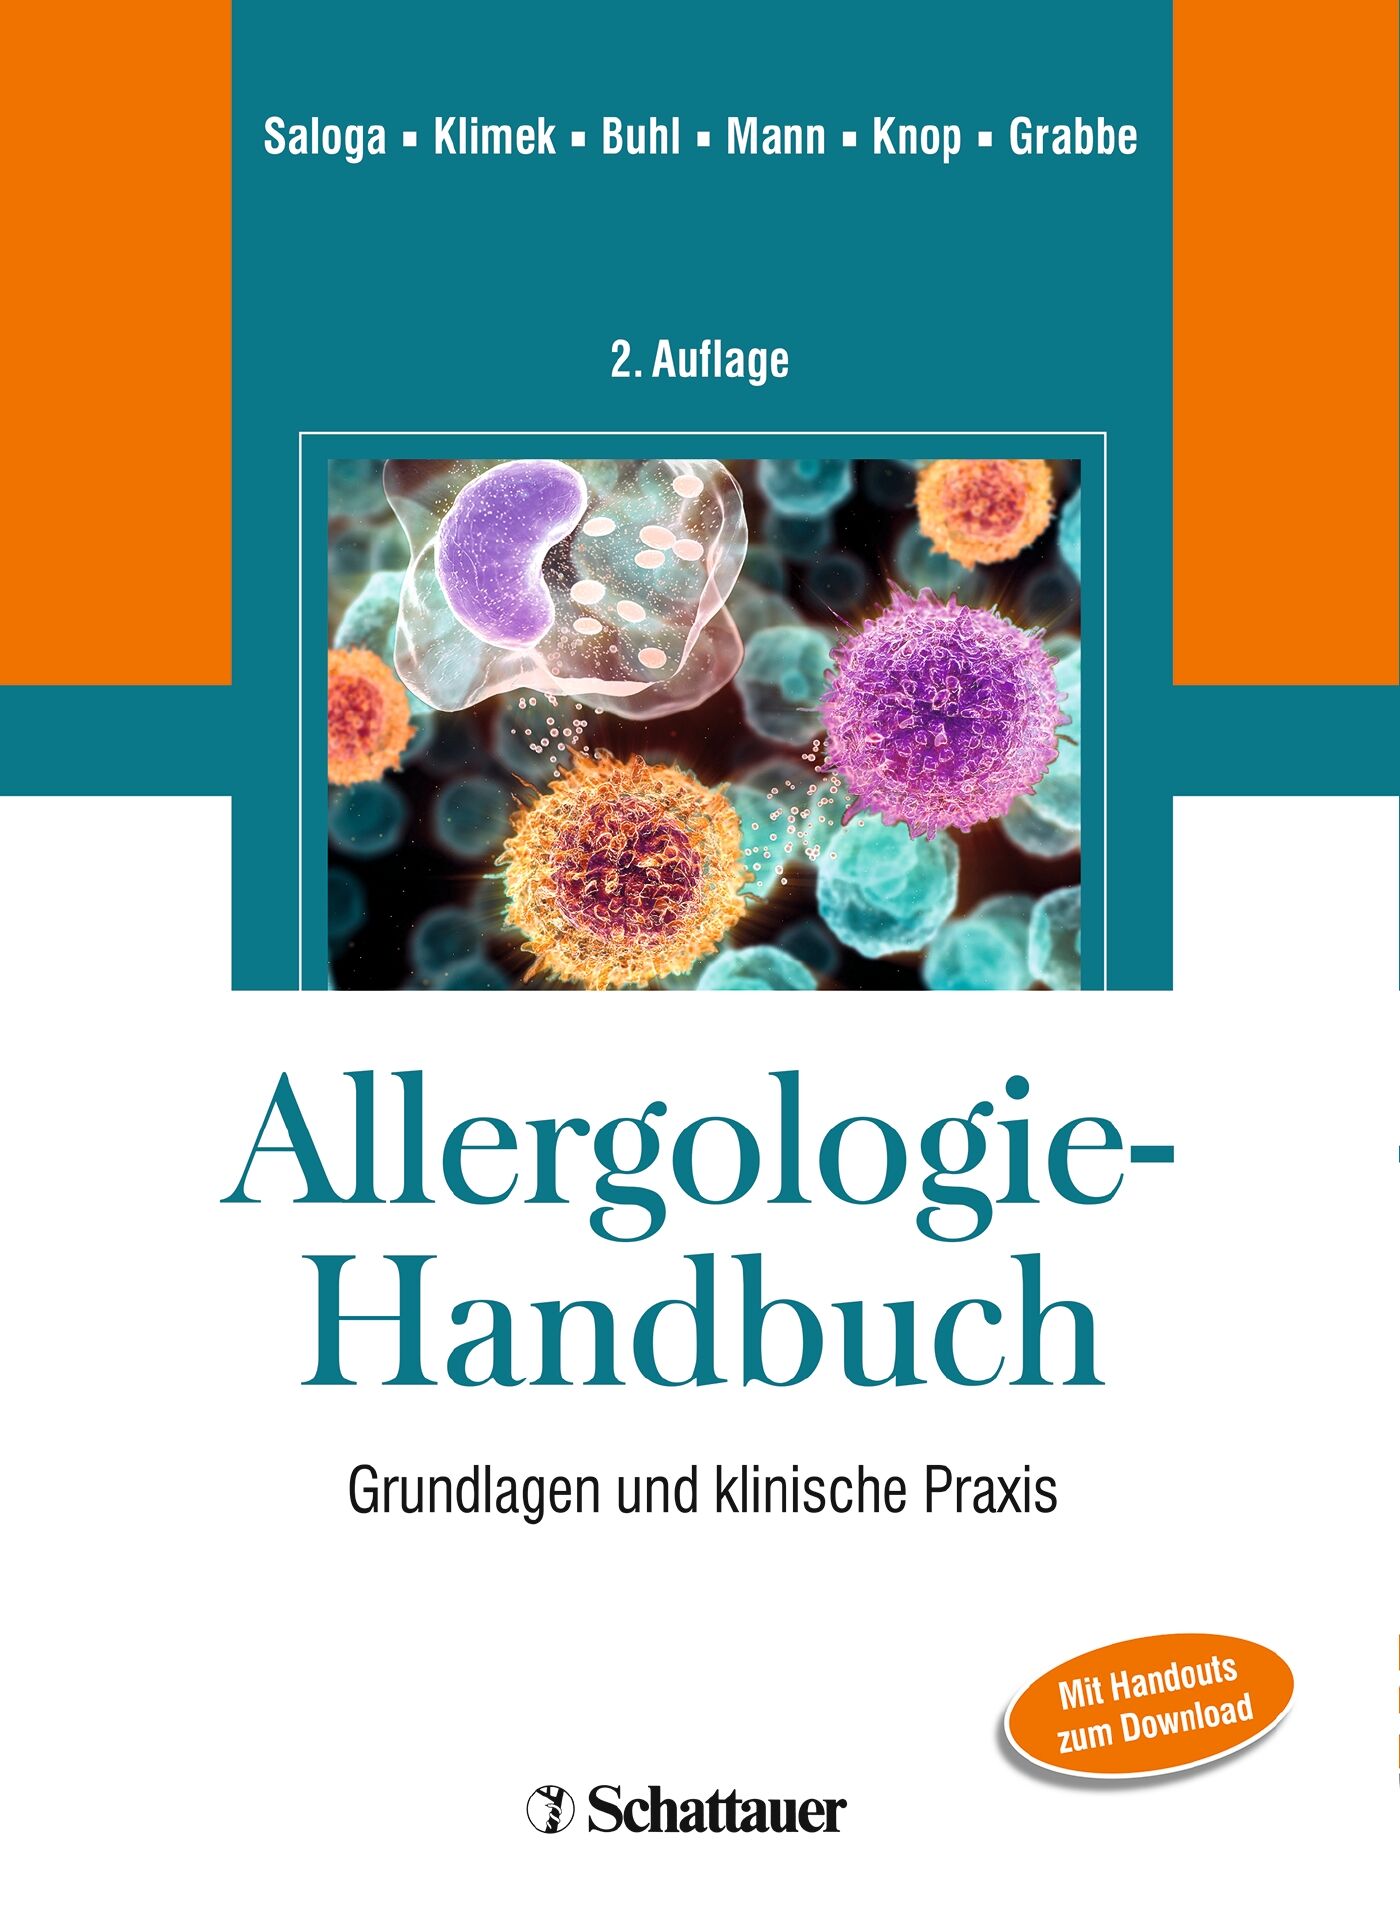 Allergologie-Handbuch, 9783794566709